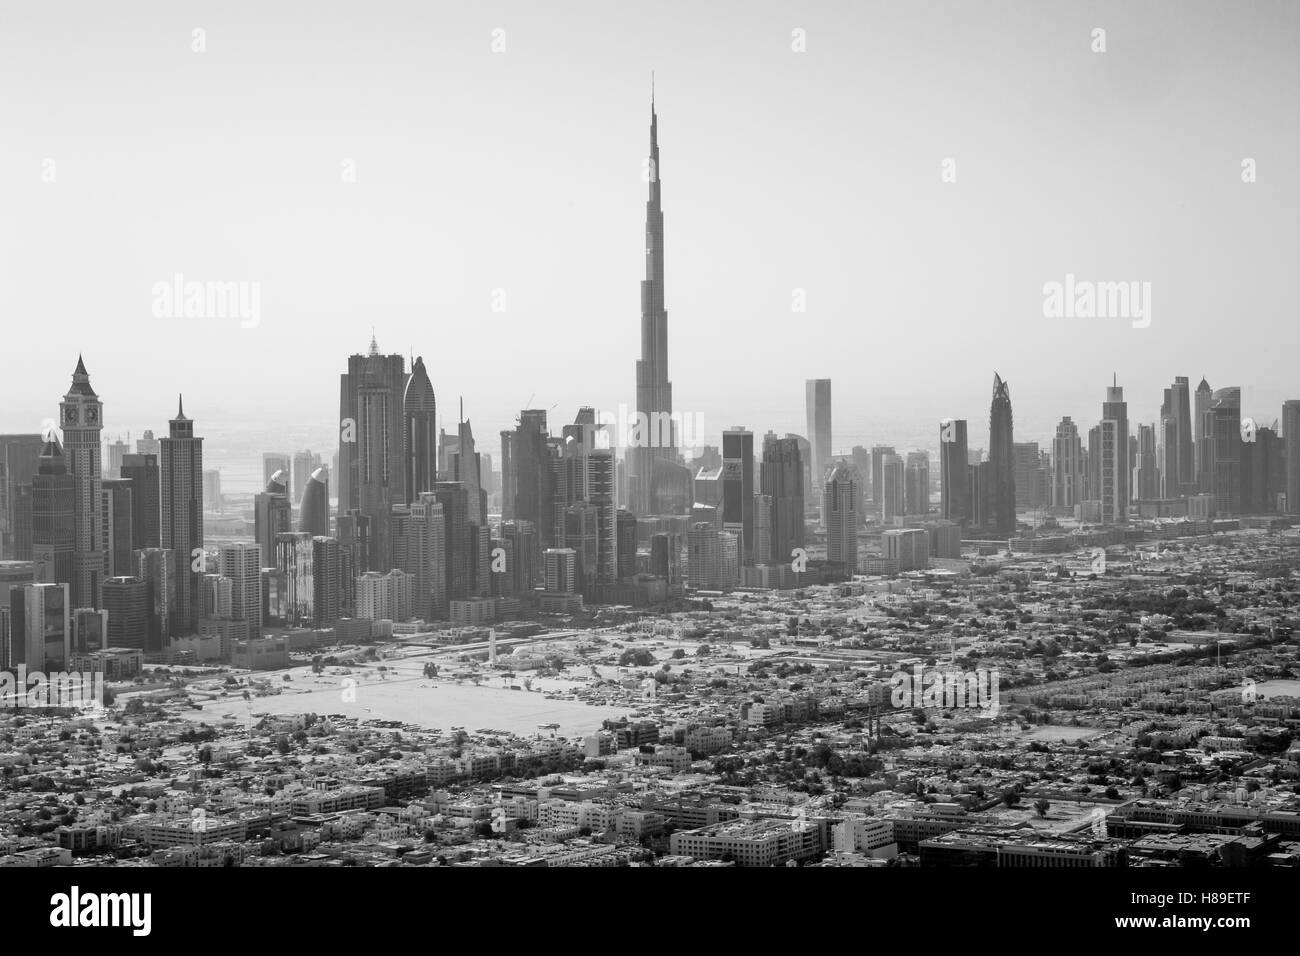 Dubaï, Émirats arabes unis - 17 octobre 2014 : toits de ville avec la célèbre tour Burj Khalifa prises en noir et blanc Banque D'Images